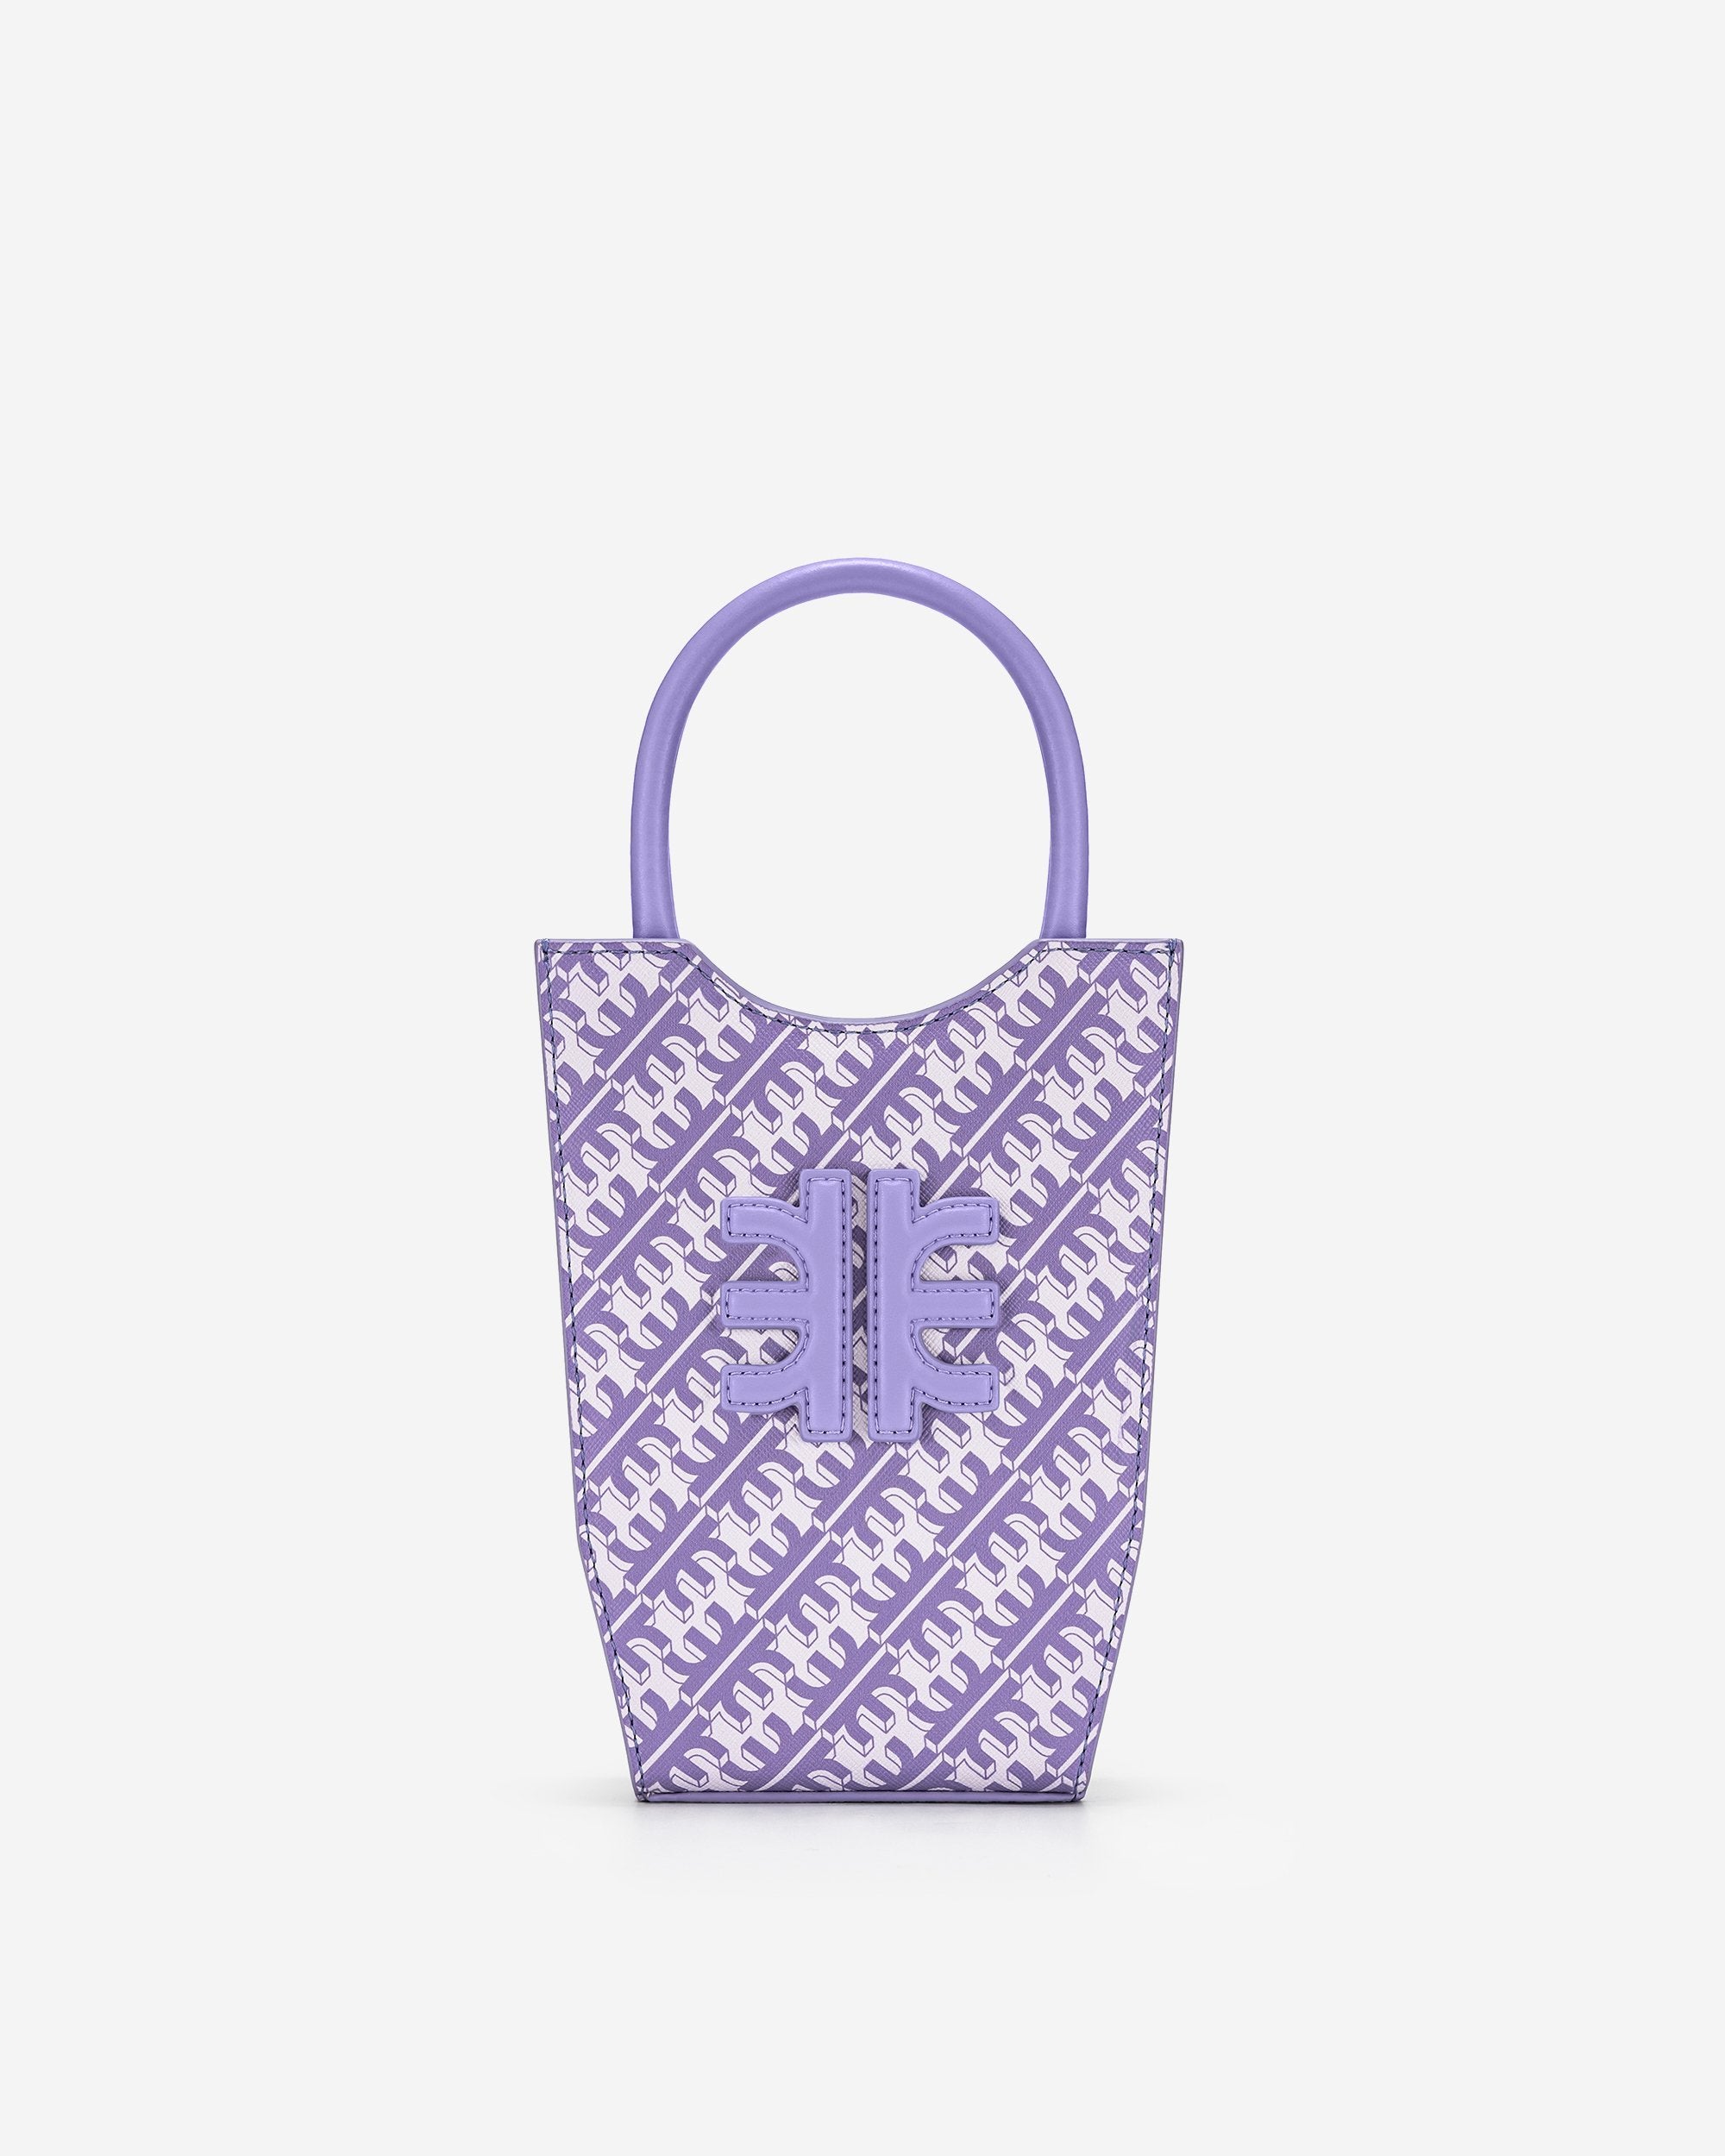 FEI 手機包 - 淺紫色